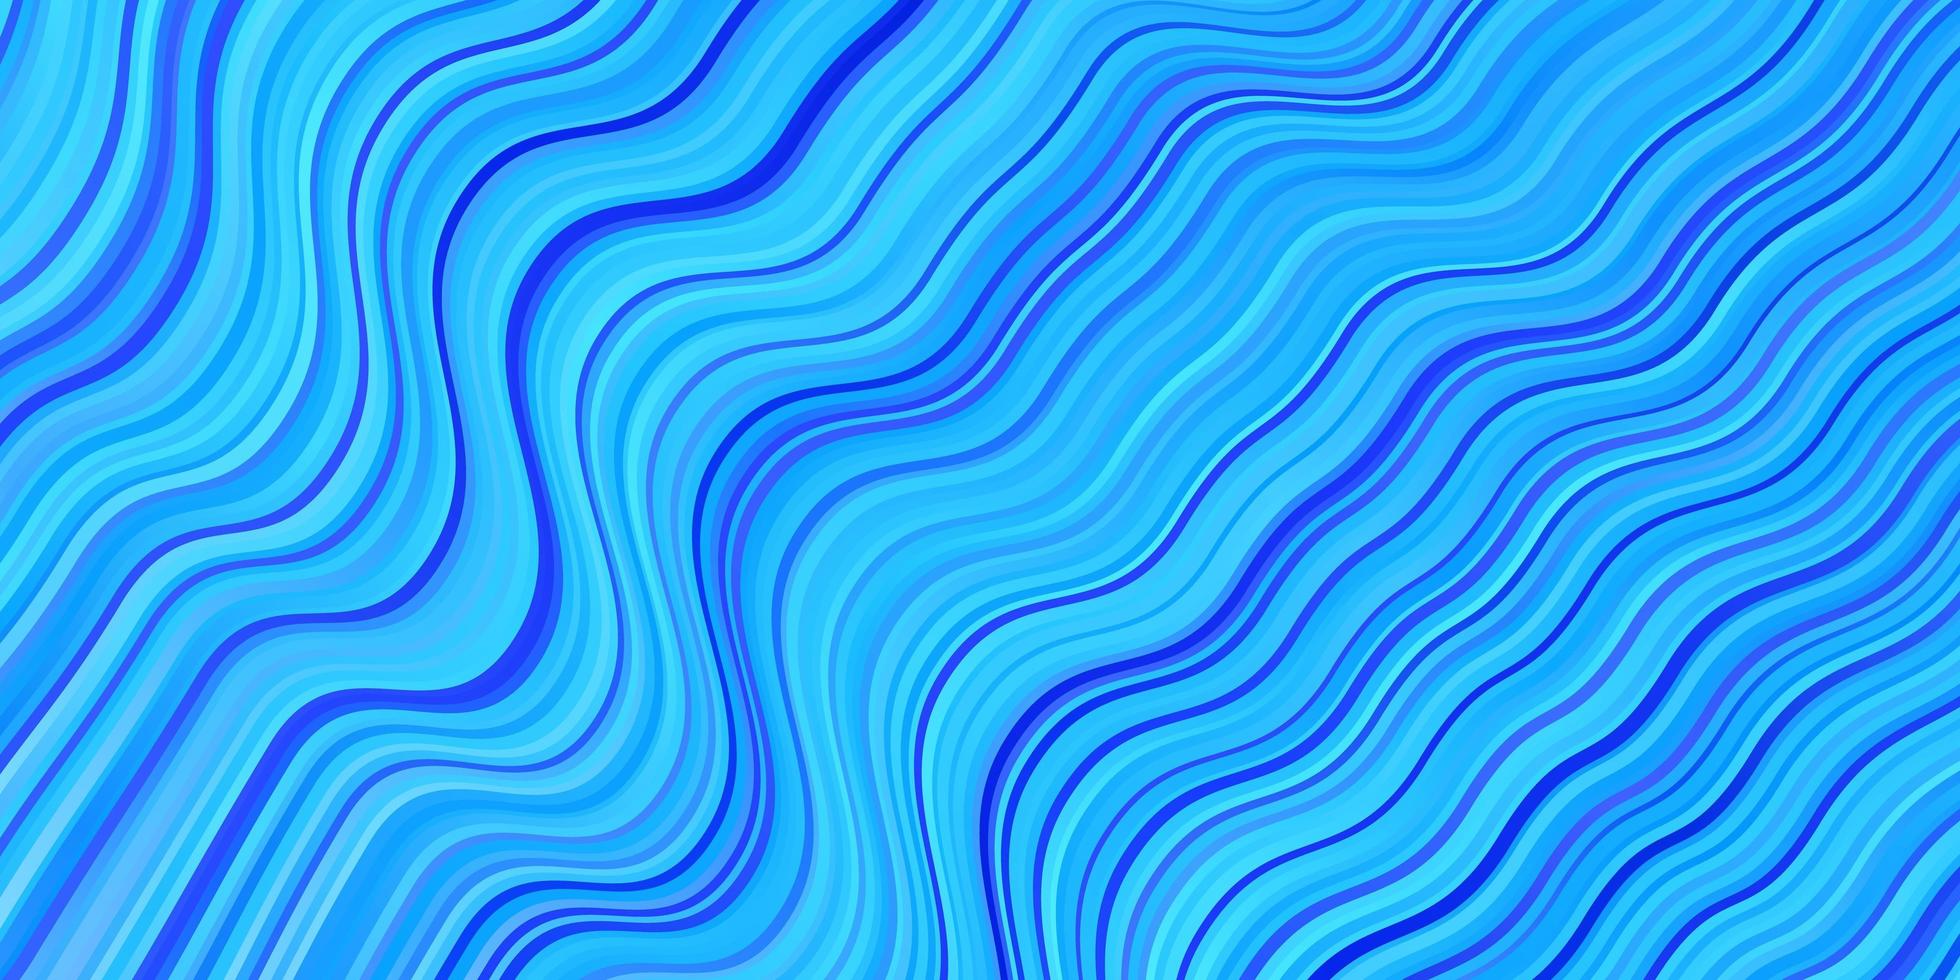 ljusblå vektormall med böjda linjer. färgglad illustration i cirkulär stil med linjer. mall för mobiltelefoner. vektor